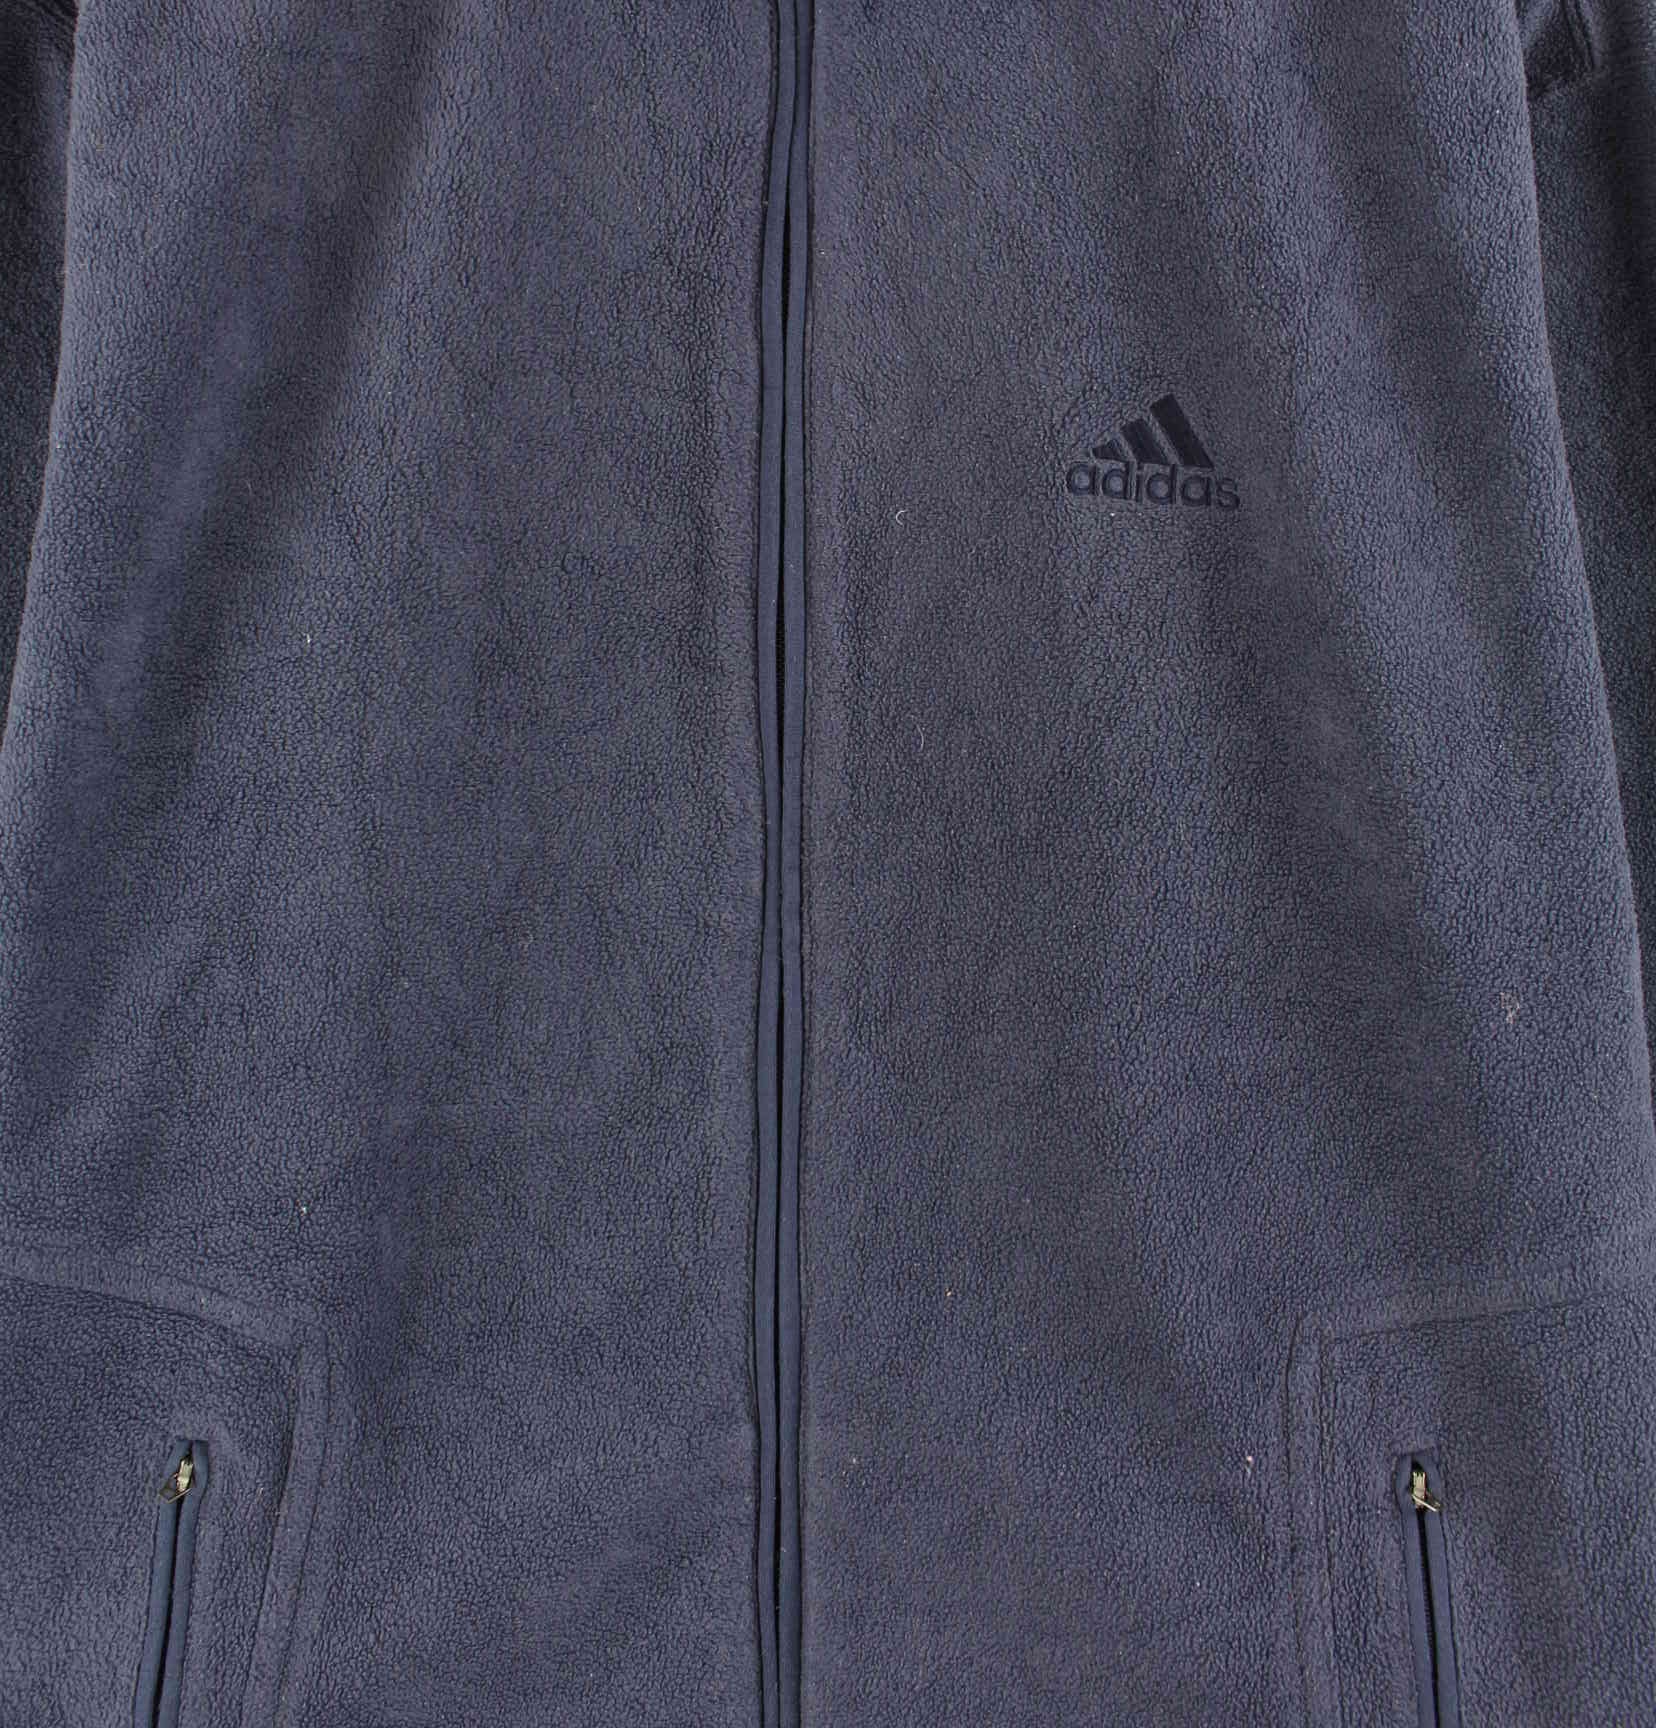 Adidas 90s Vintage Fleece Sweatjacke Blau L (detail image 1)